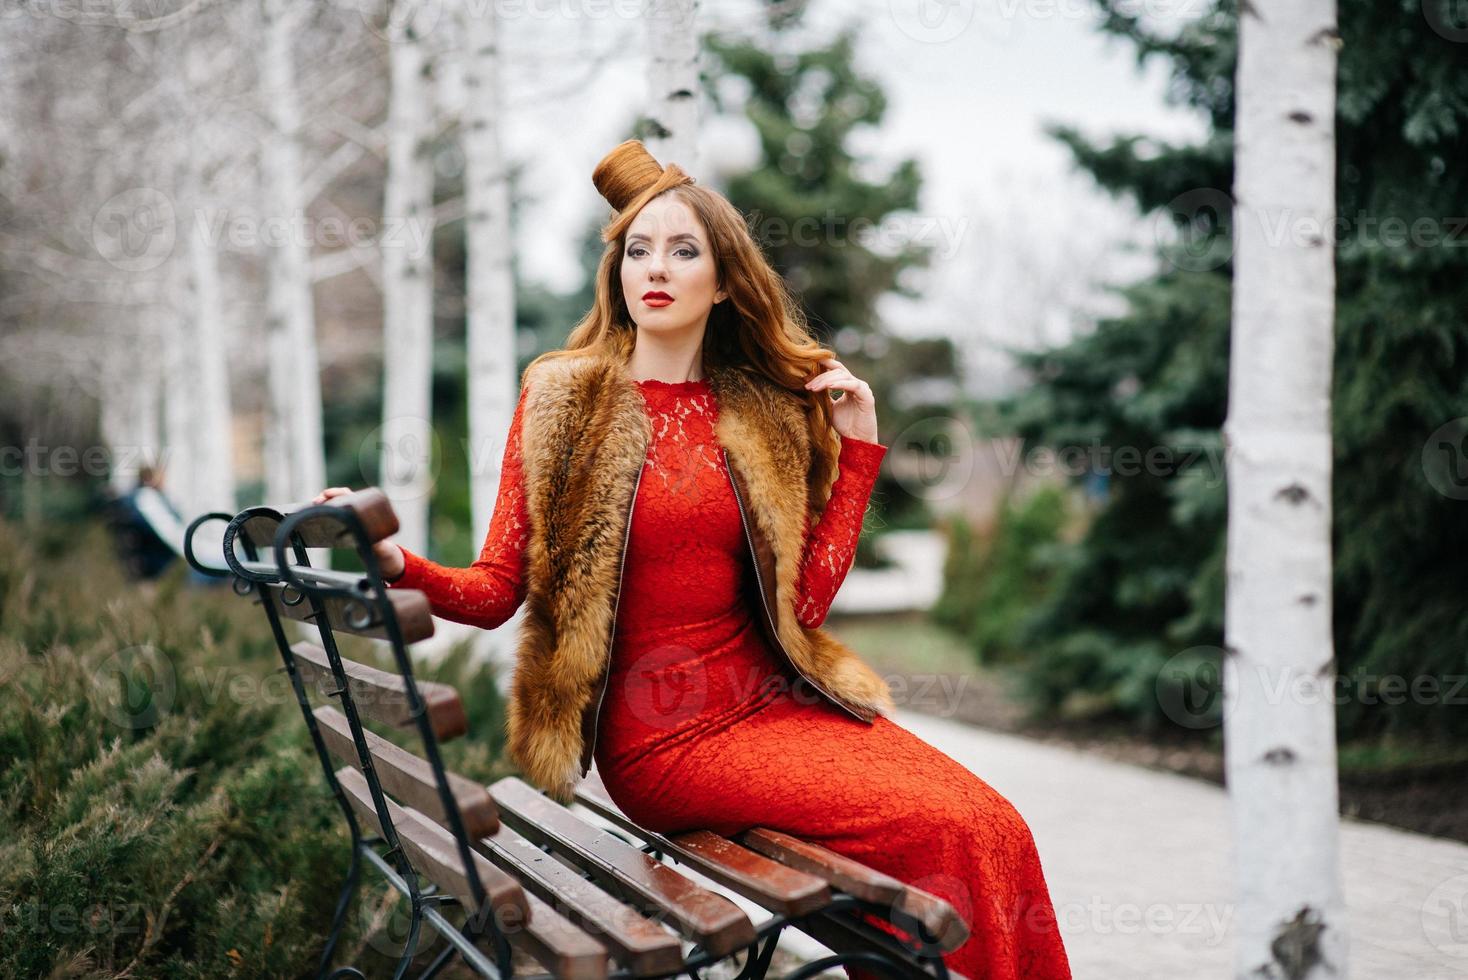 giovane ragazza con i capelli rossi in un vestito rosso brillante su una panchina in un parco vuoto foto